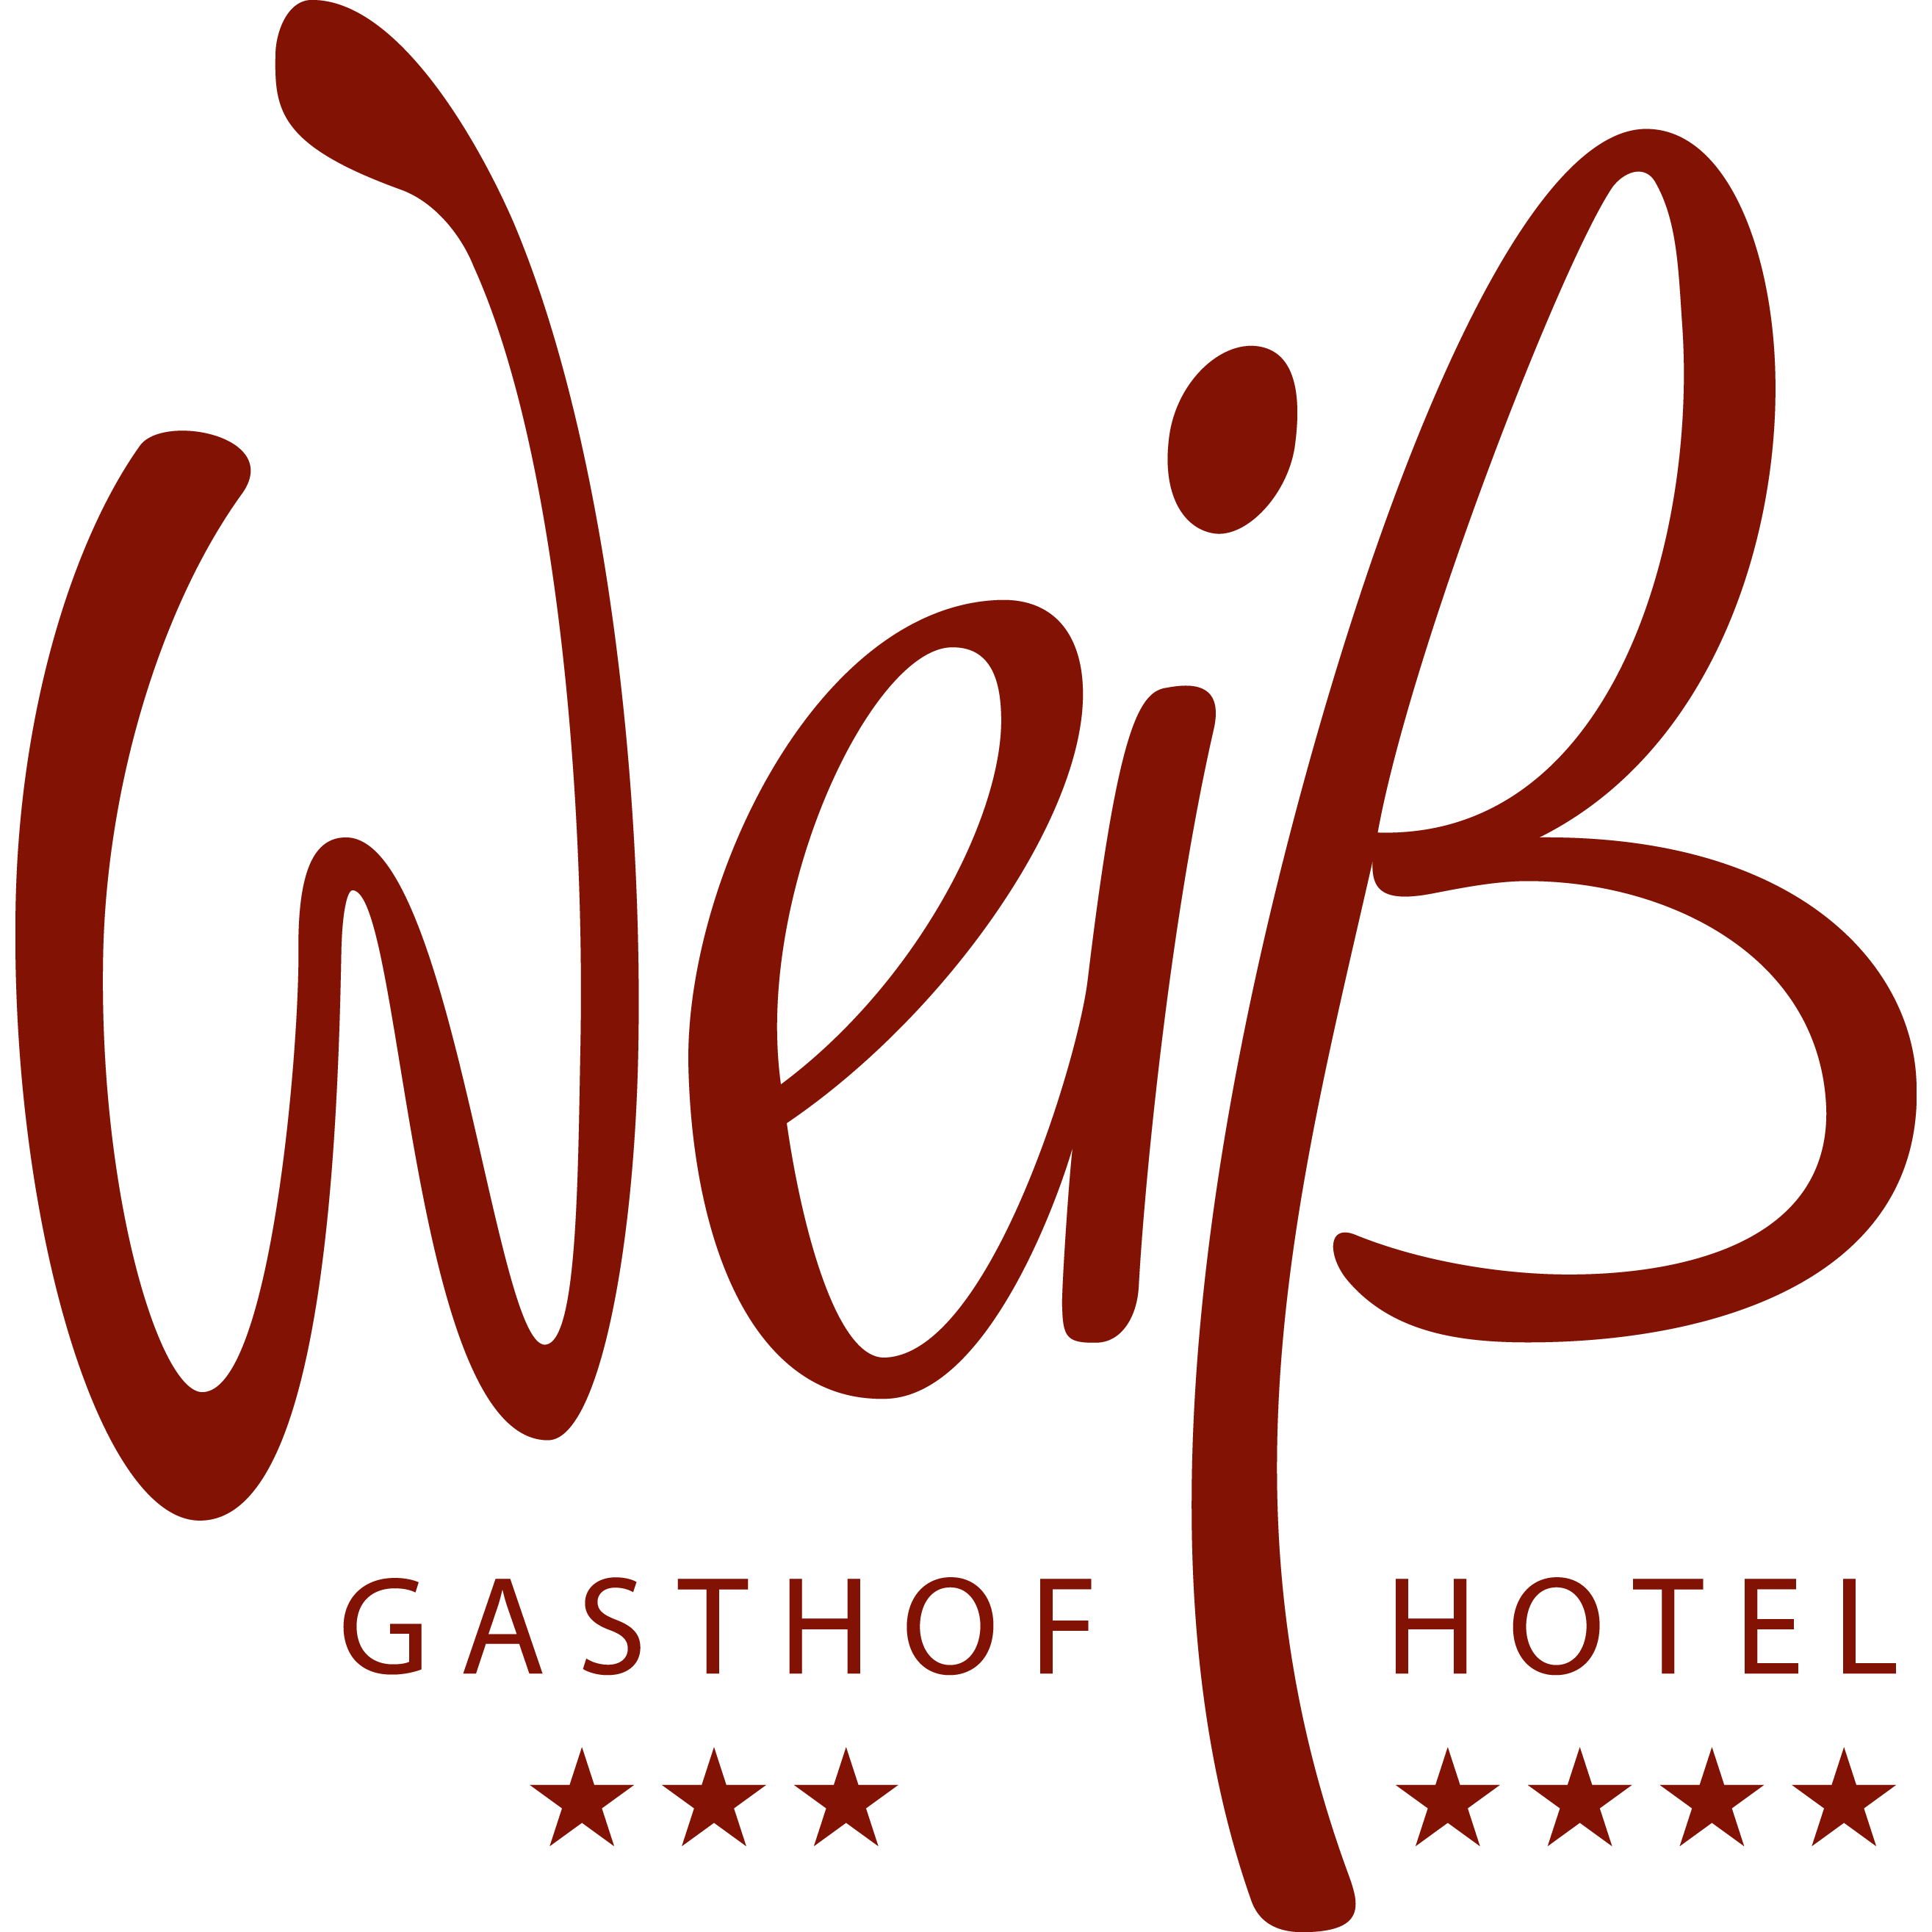 Restaurtant Hotel Weiss GmbH Logo